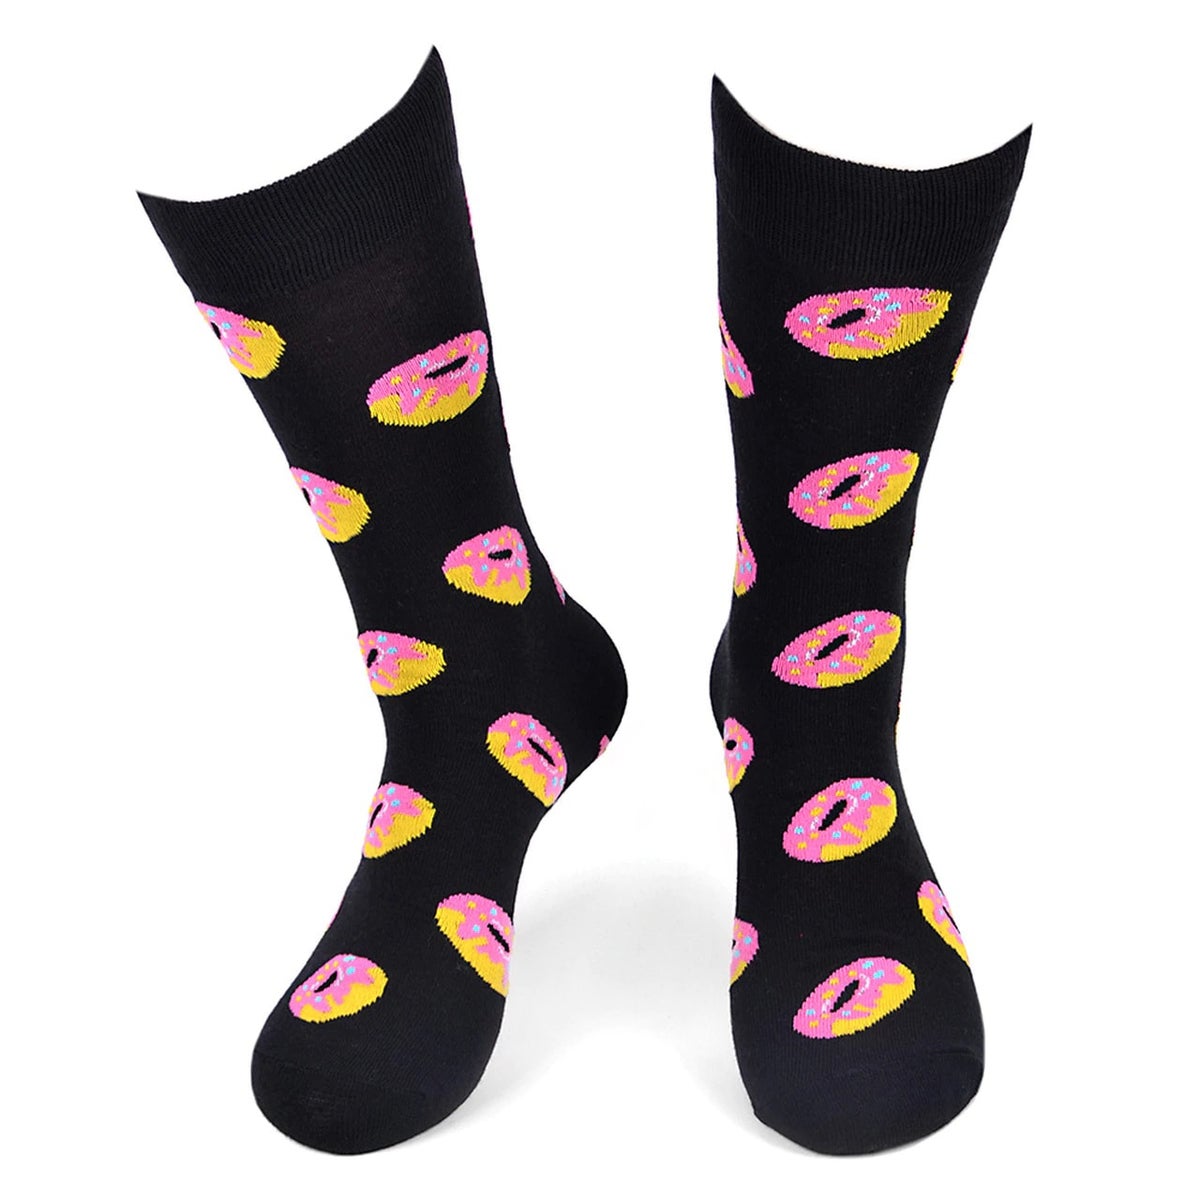 MashasCorner.com   Men's Donut Novelty Socks - MCNVS1788-BK